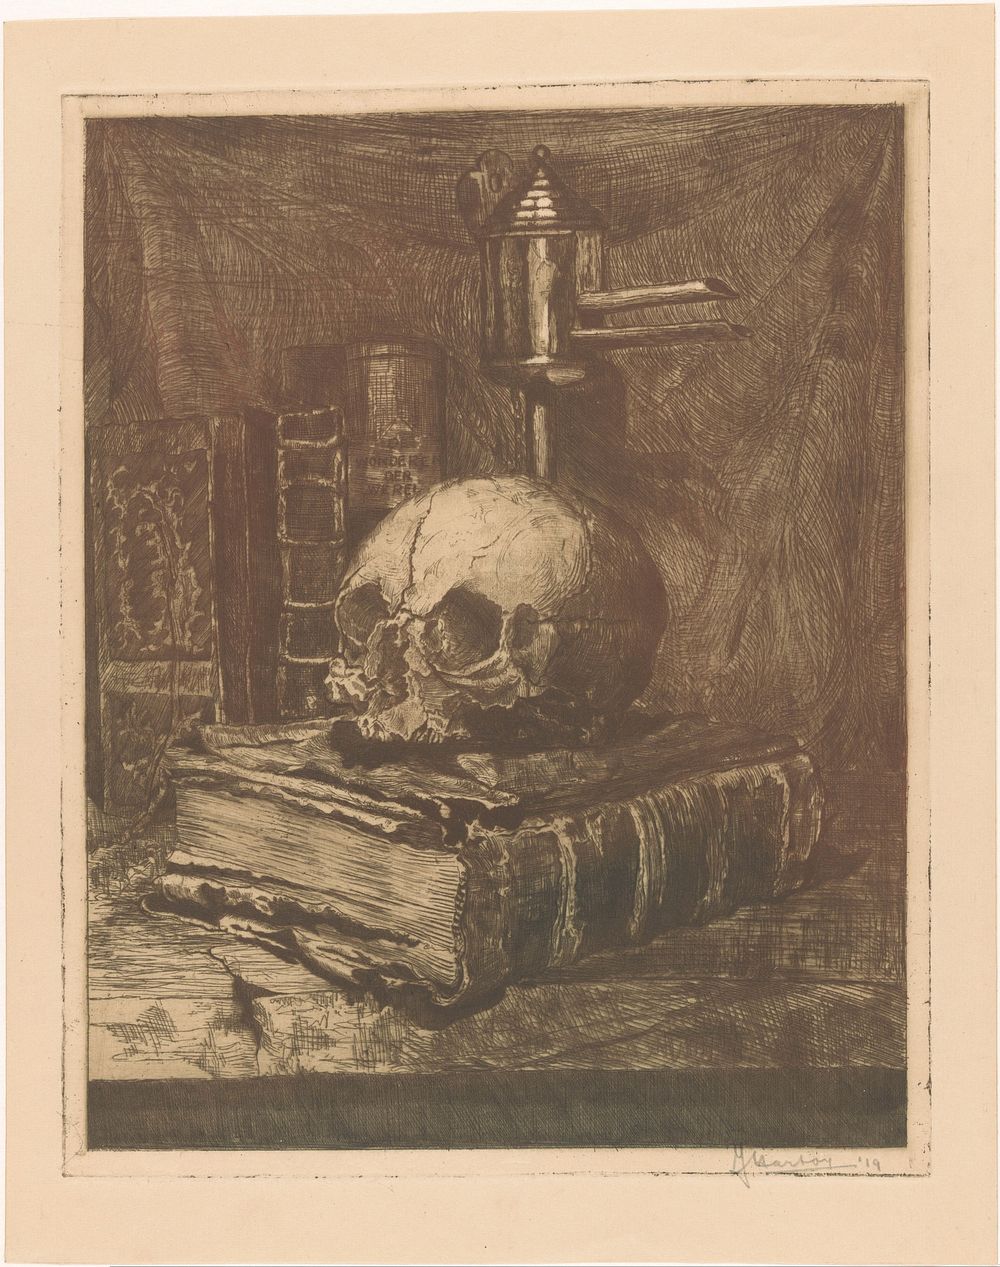 Stilleven met schedel op een boek (1919) by Jacques Hartog